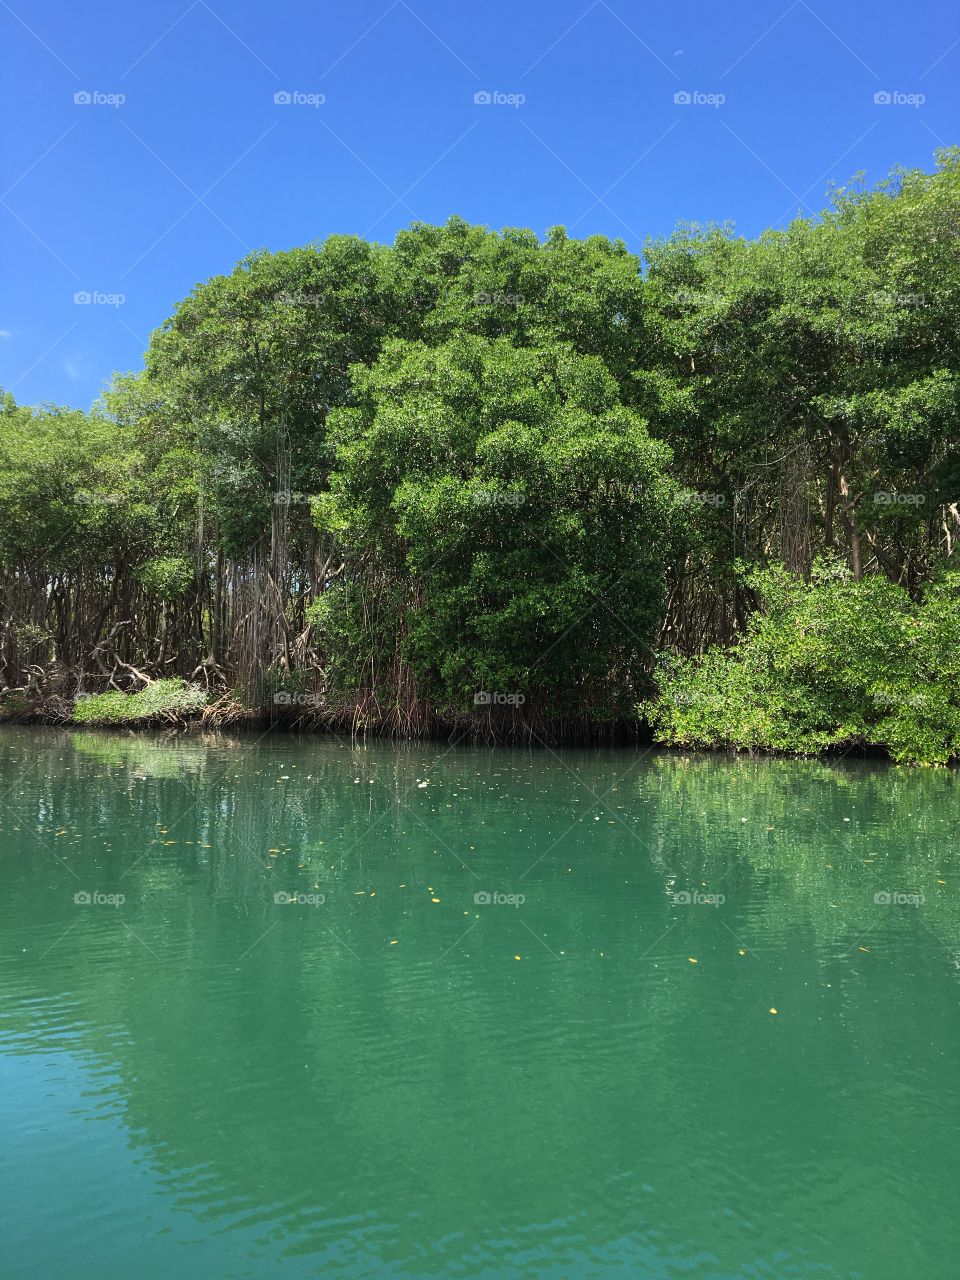 Lagoon and mangroves